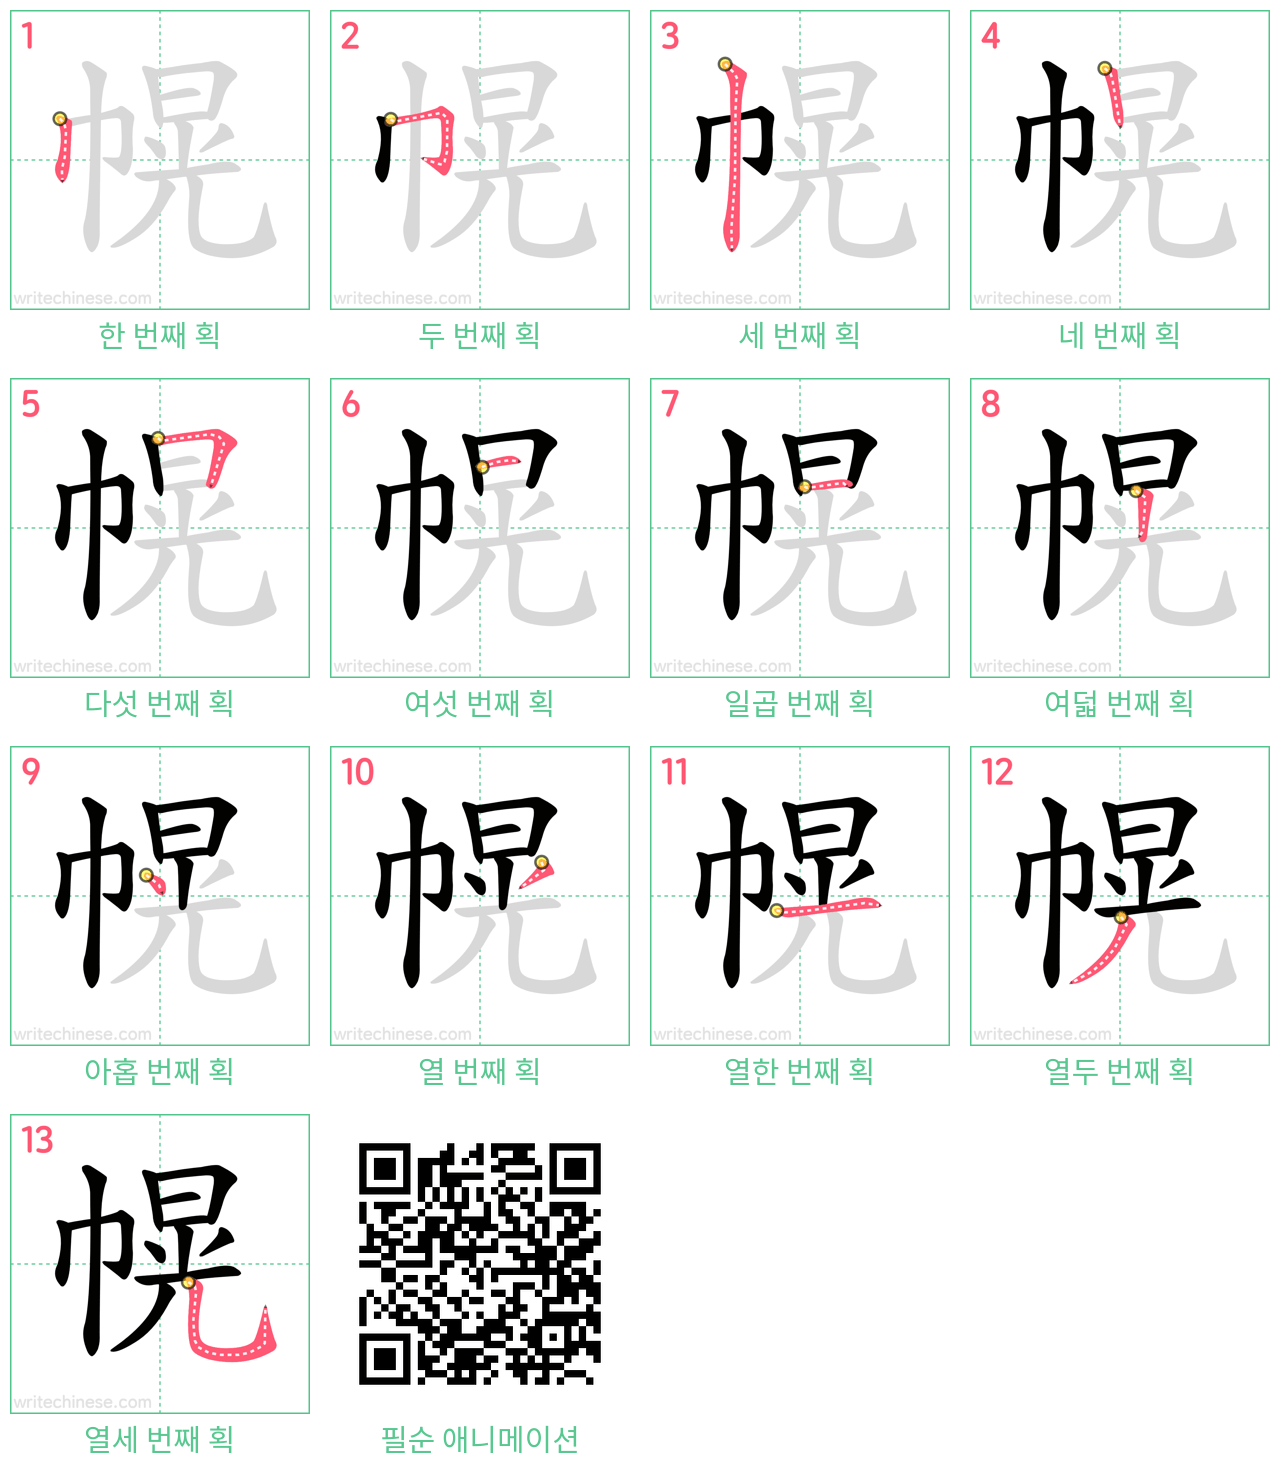 幌 step-by-step stroke order diagrams